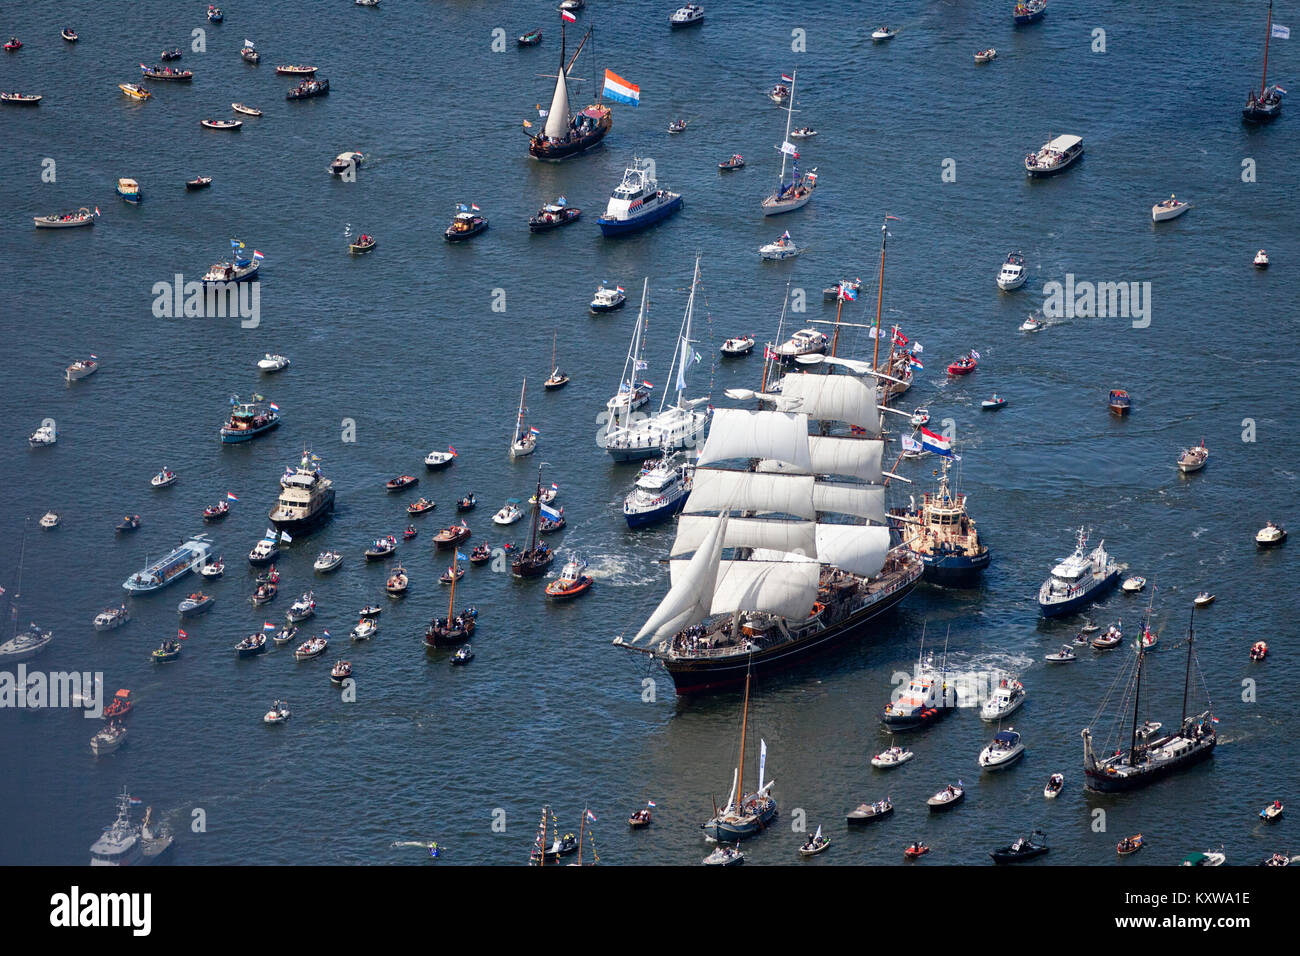 Les Pays-Bas, Amsterdam, bateau à voile, événement célébré tous les 5 ans.  Voile de 2010. Vue aérienne de défilé des grands voiliers à partir de  l'intermédiaire du canal de la mer du